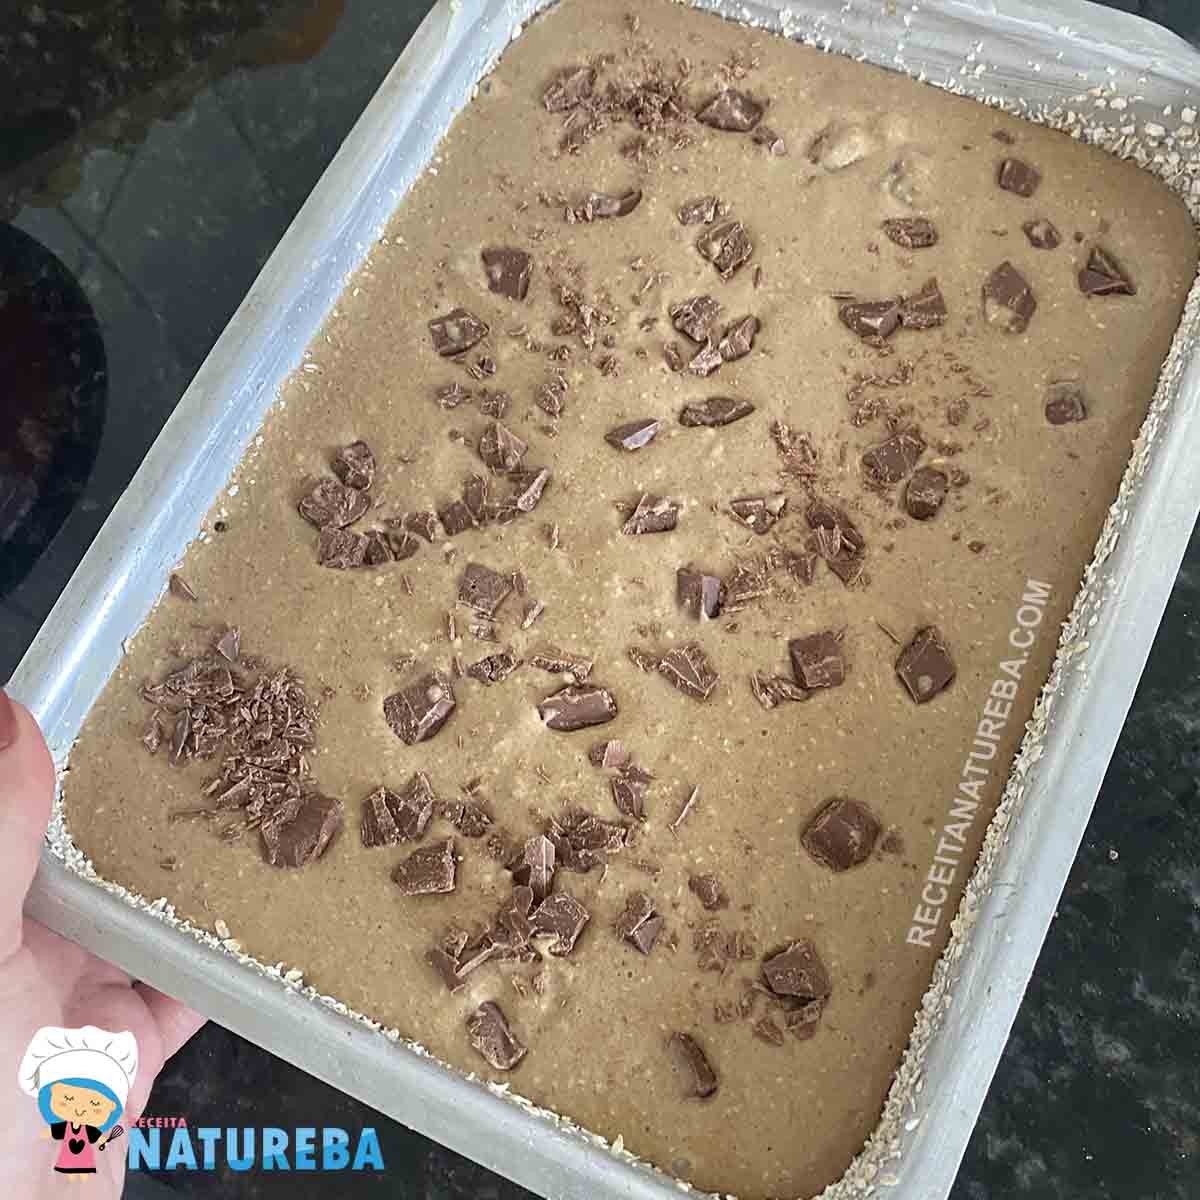 colocando pedaços de chocolate na massa do bolo